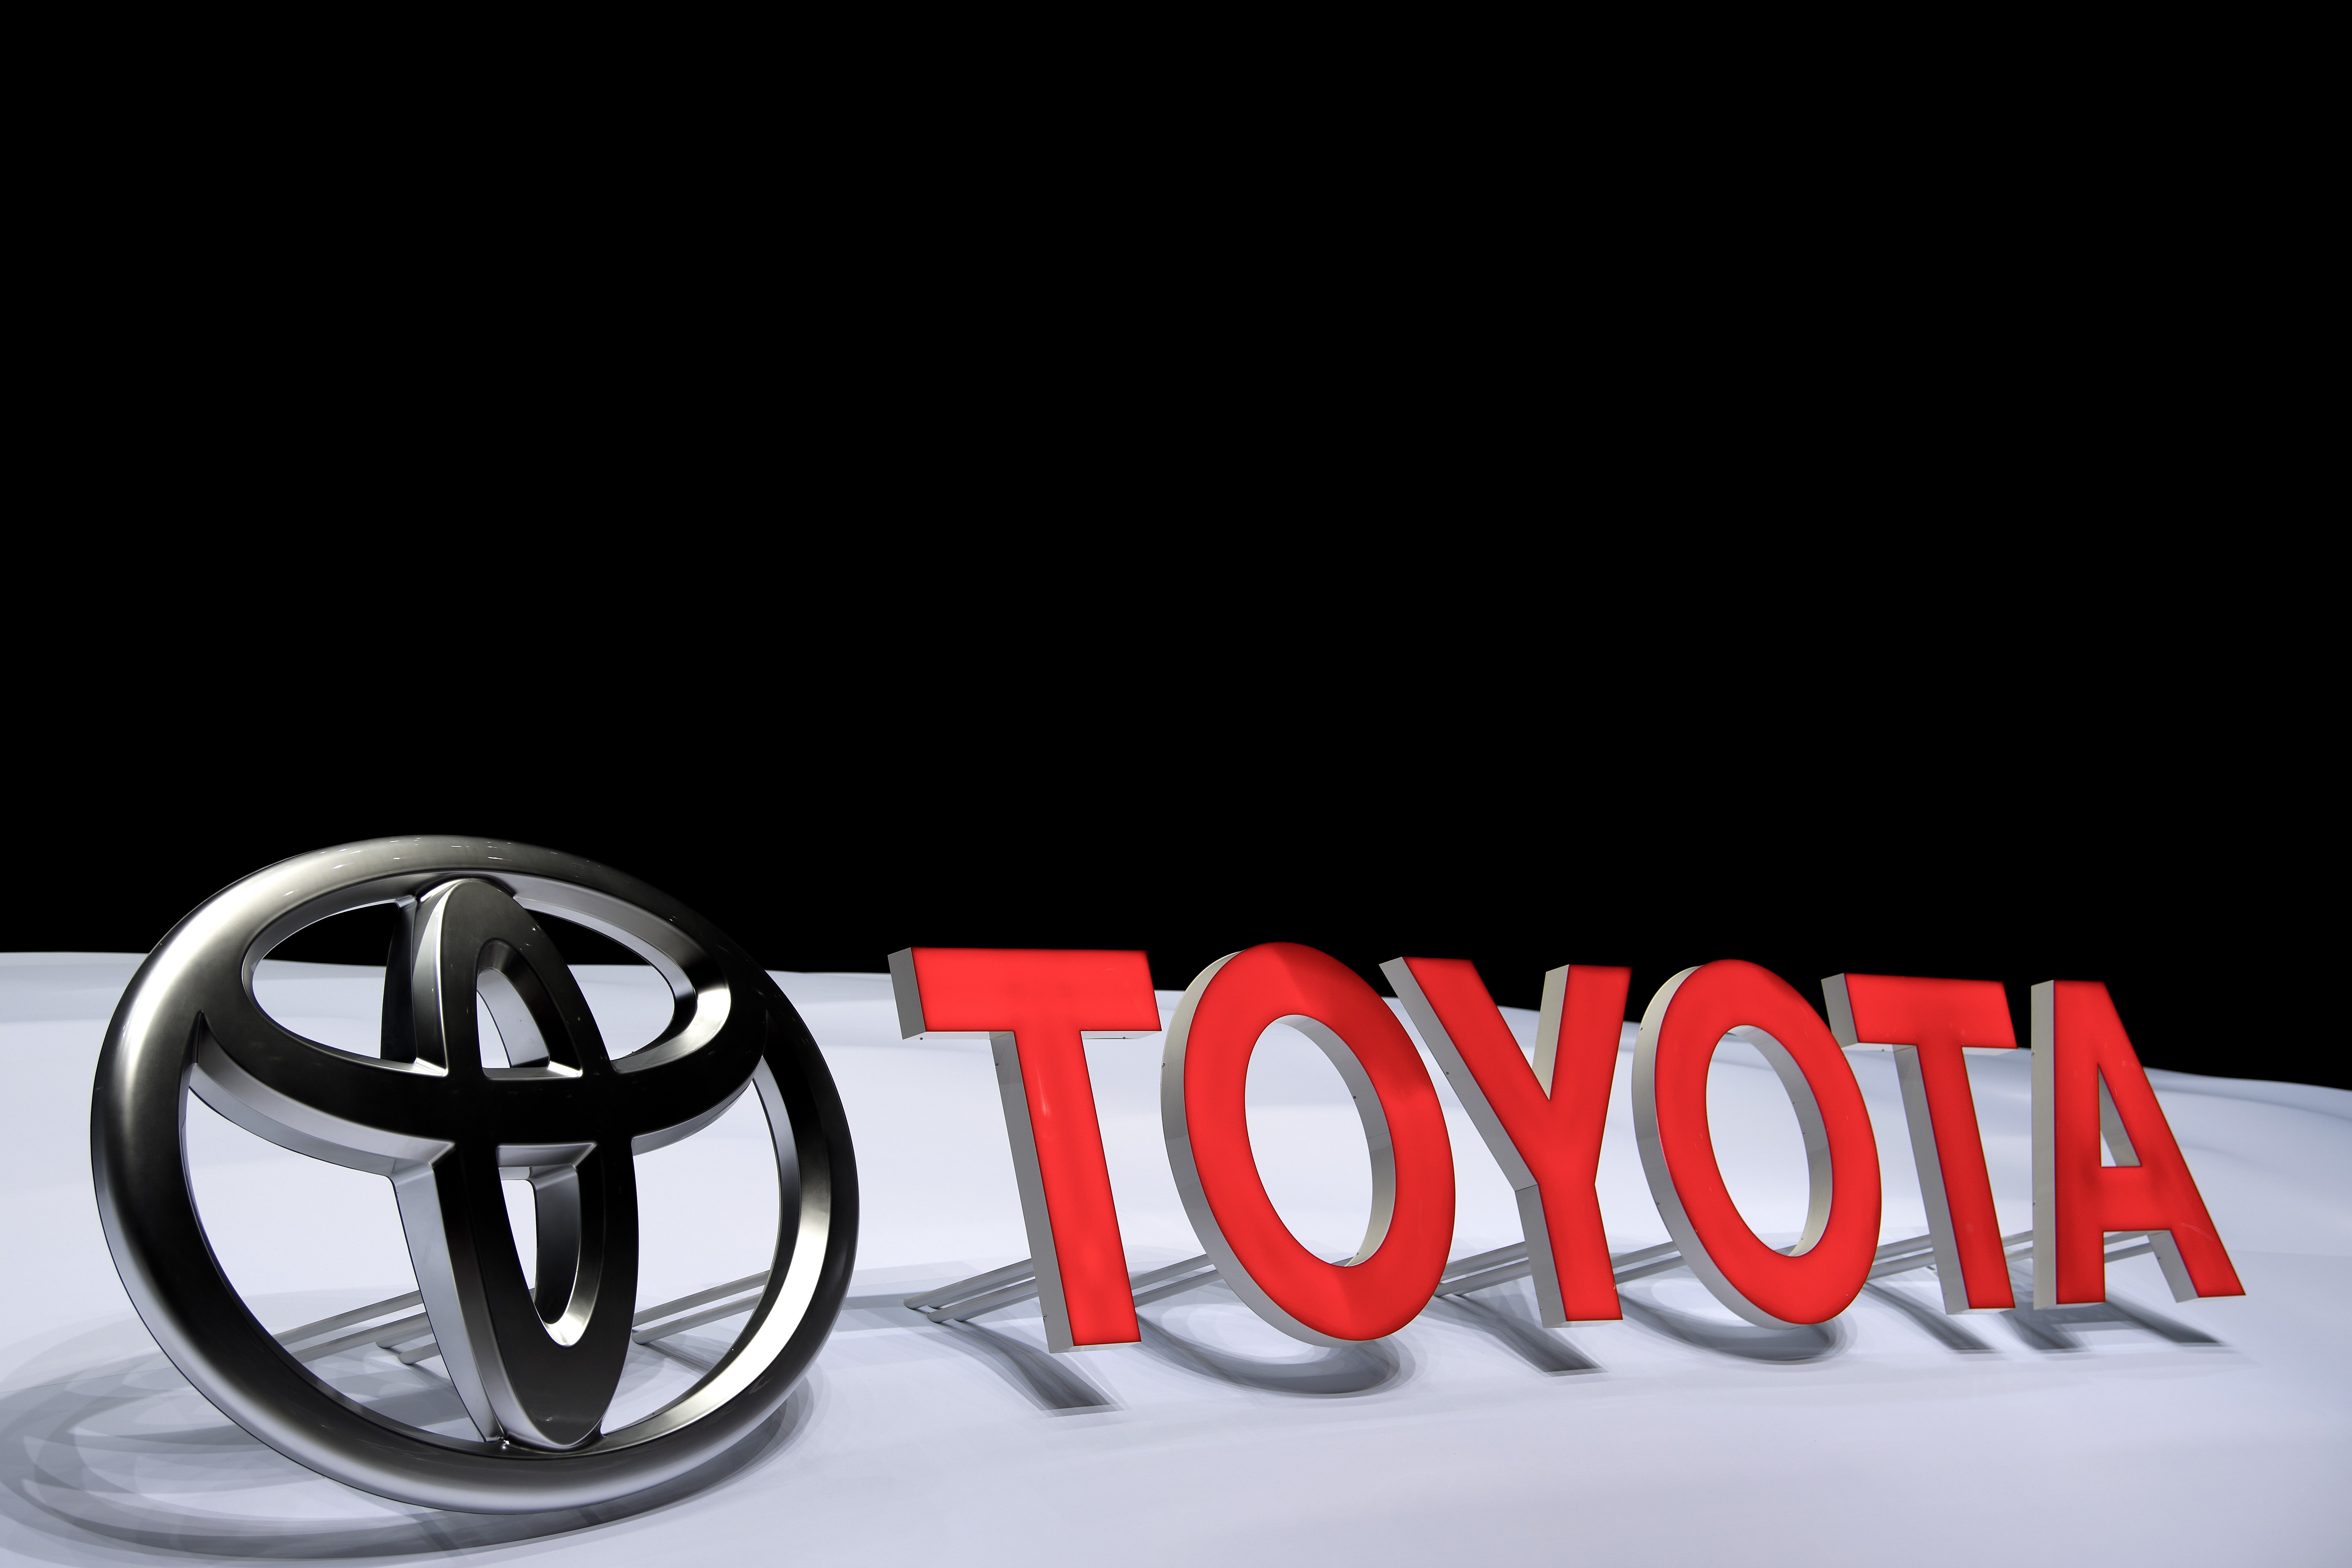 The Toyota logo in Geneva